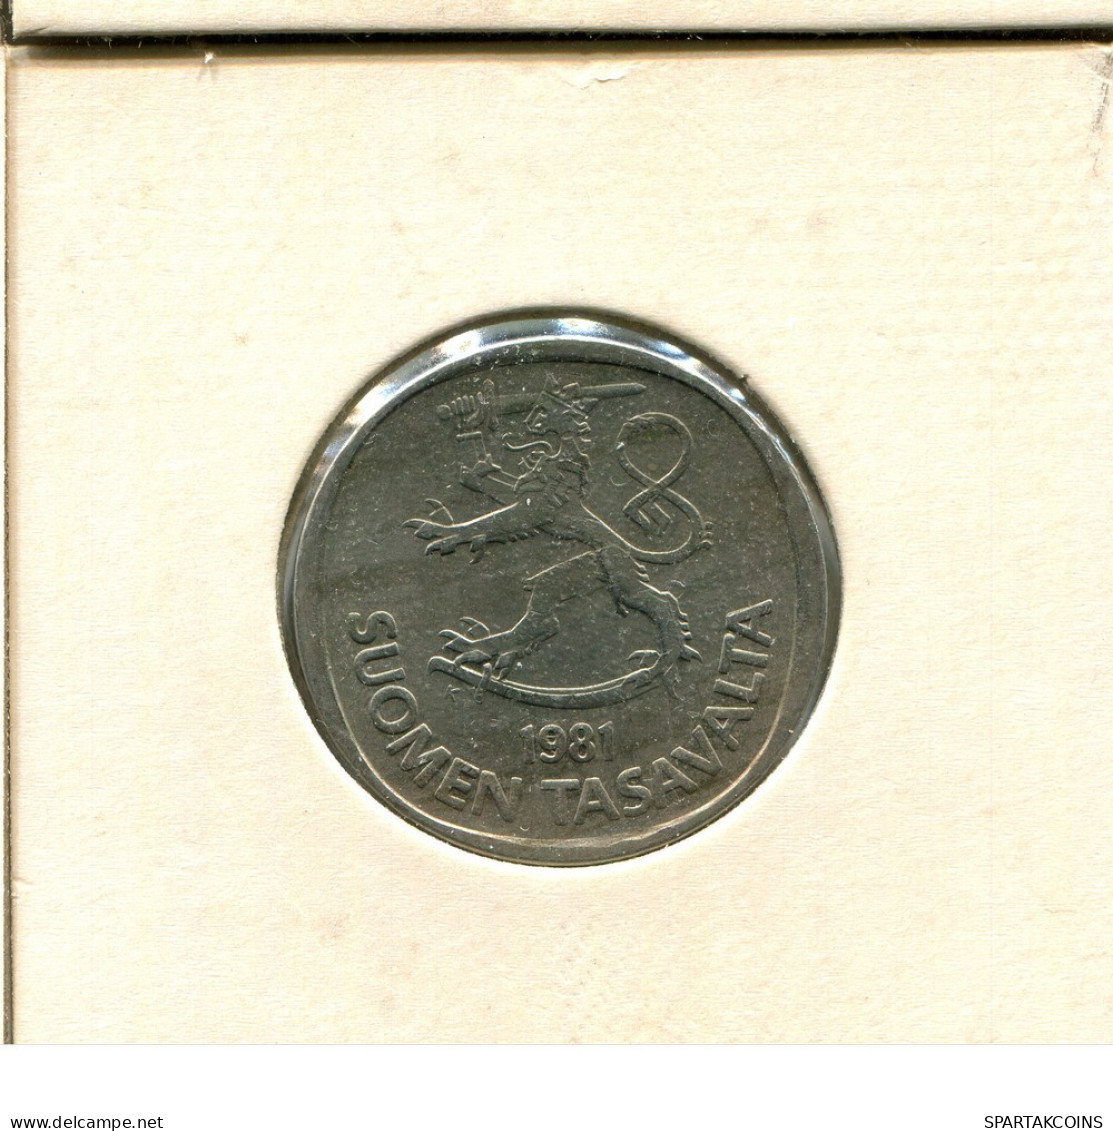 1 MARKKA 1981 FINLAND Coin #AS750.U.A - Finlande